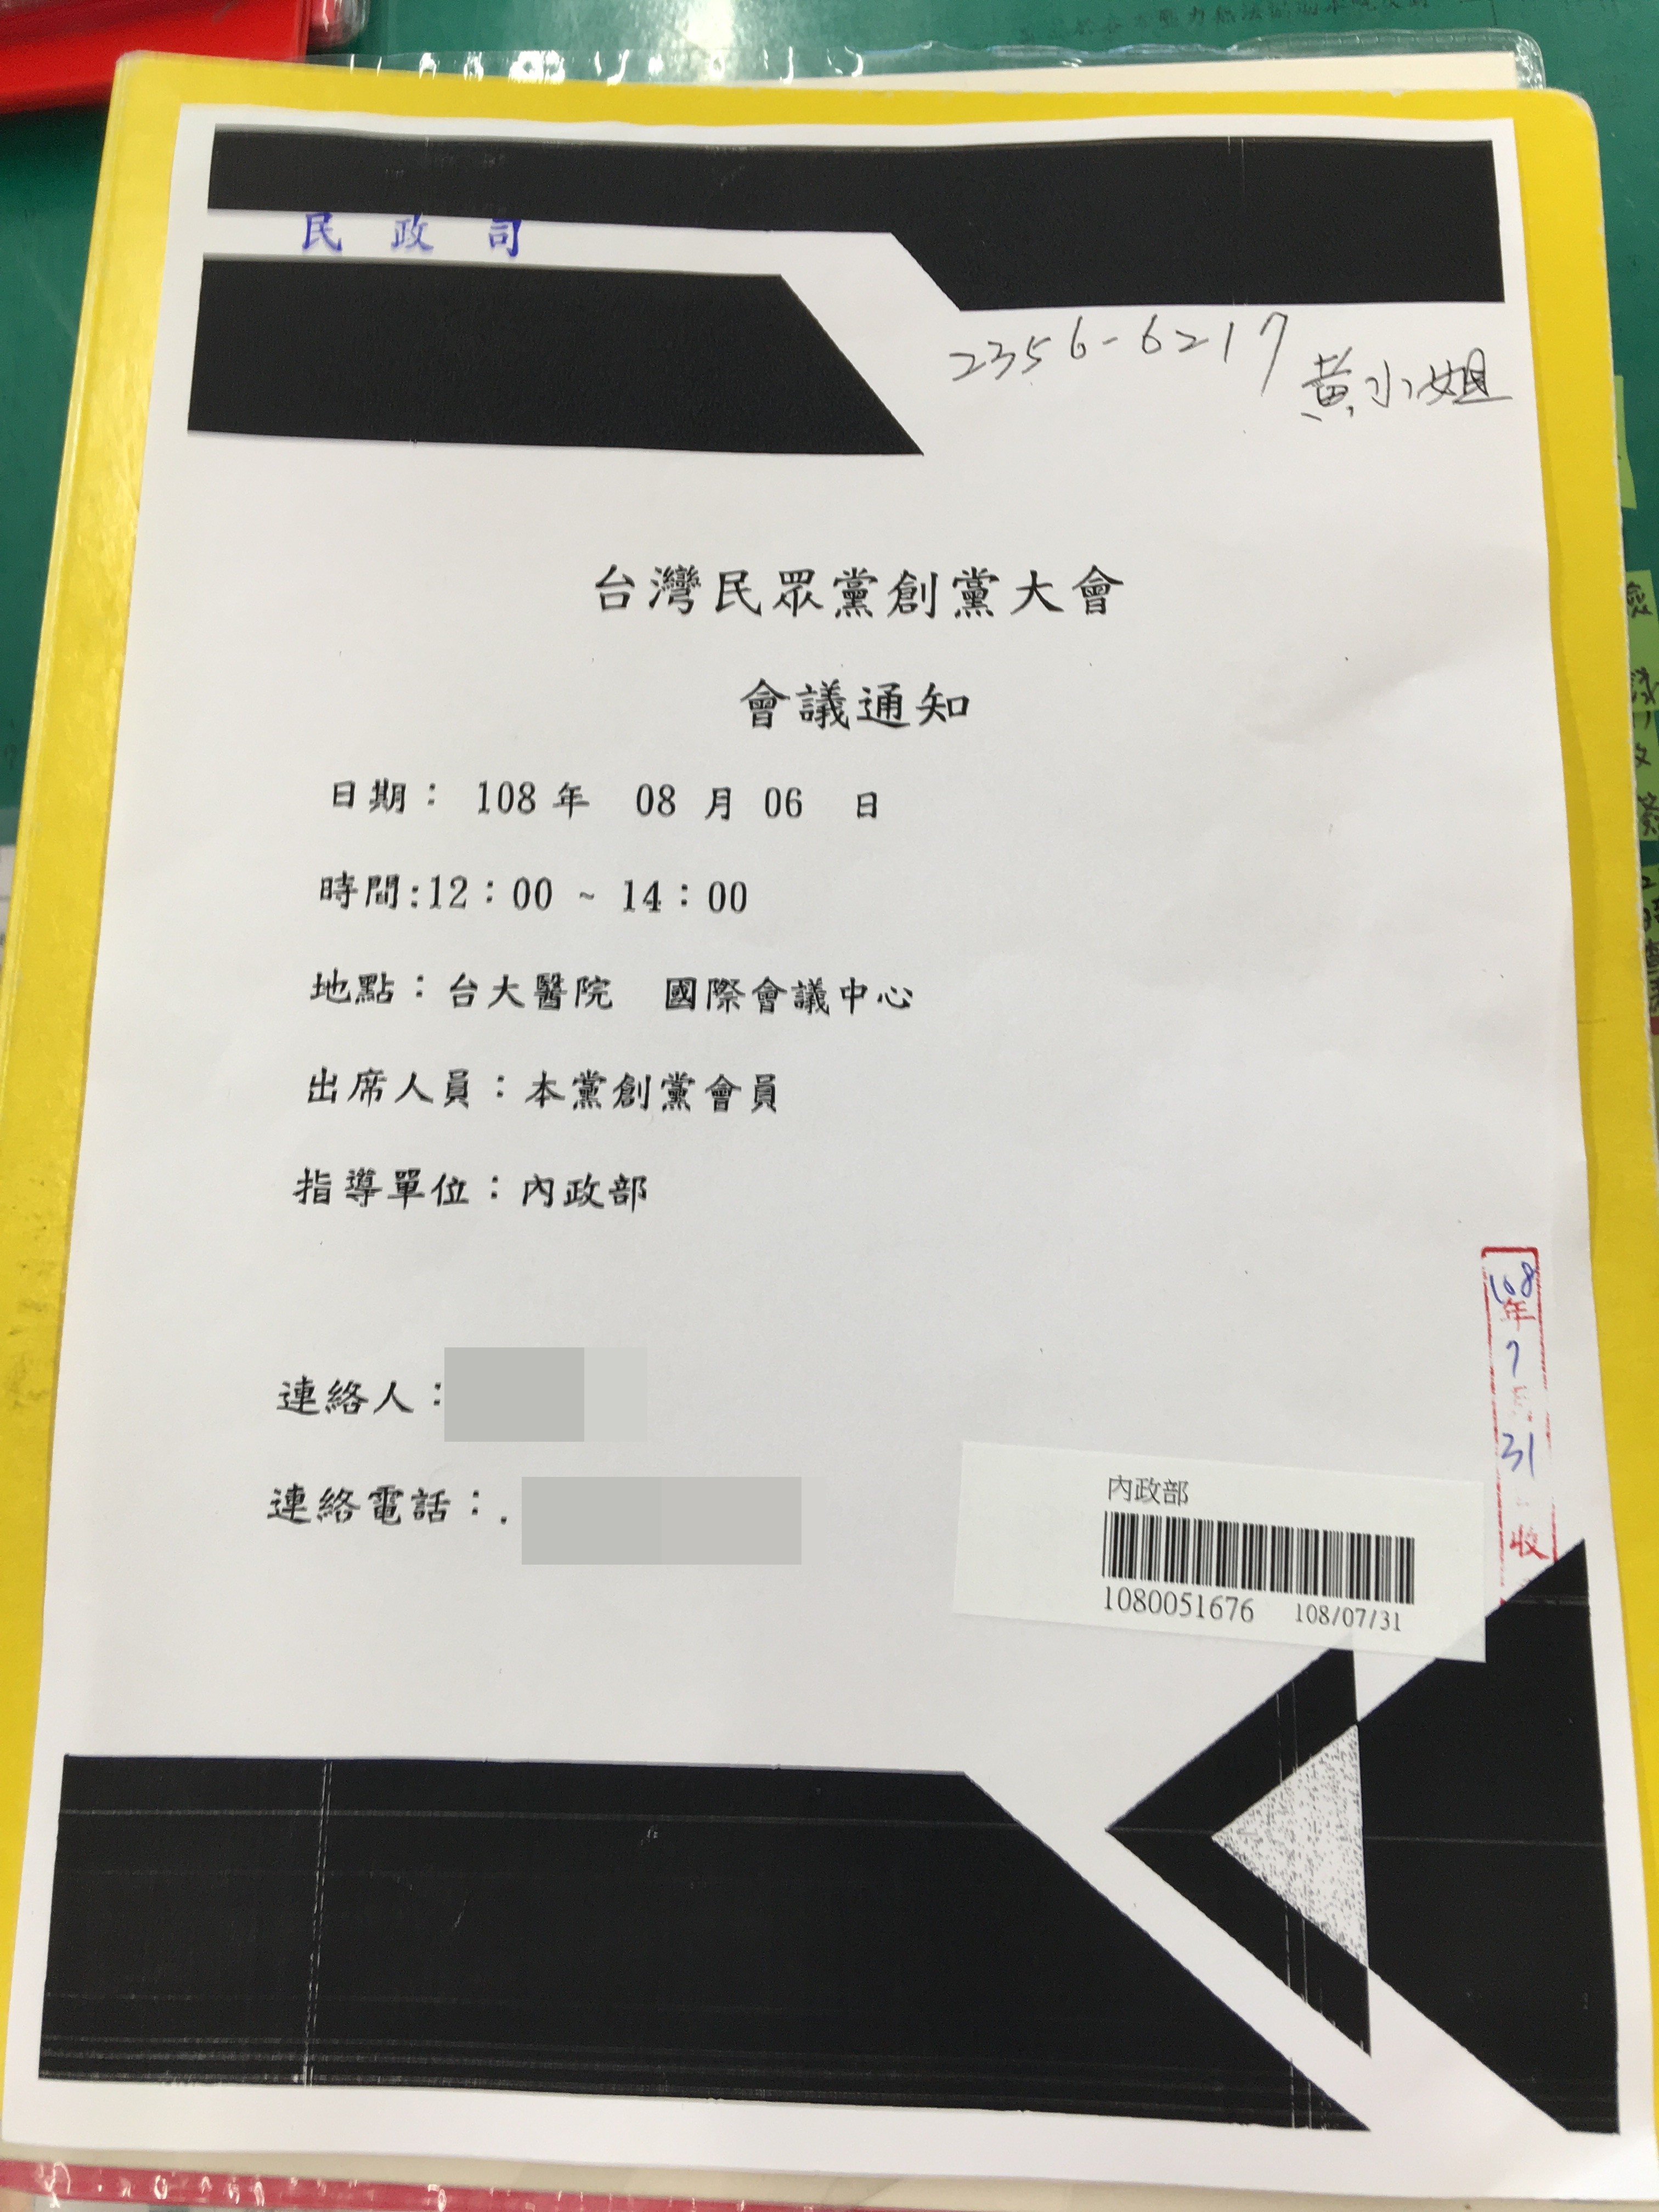 柯文哲創「台灣民眾黨」，8月6日舉辦創黨大會(民眾提供)